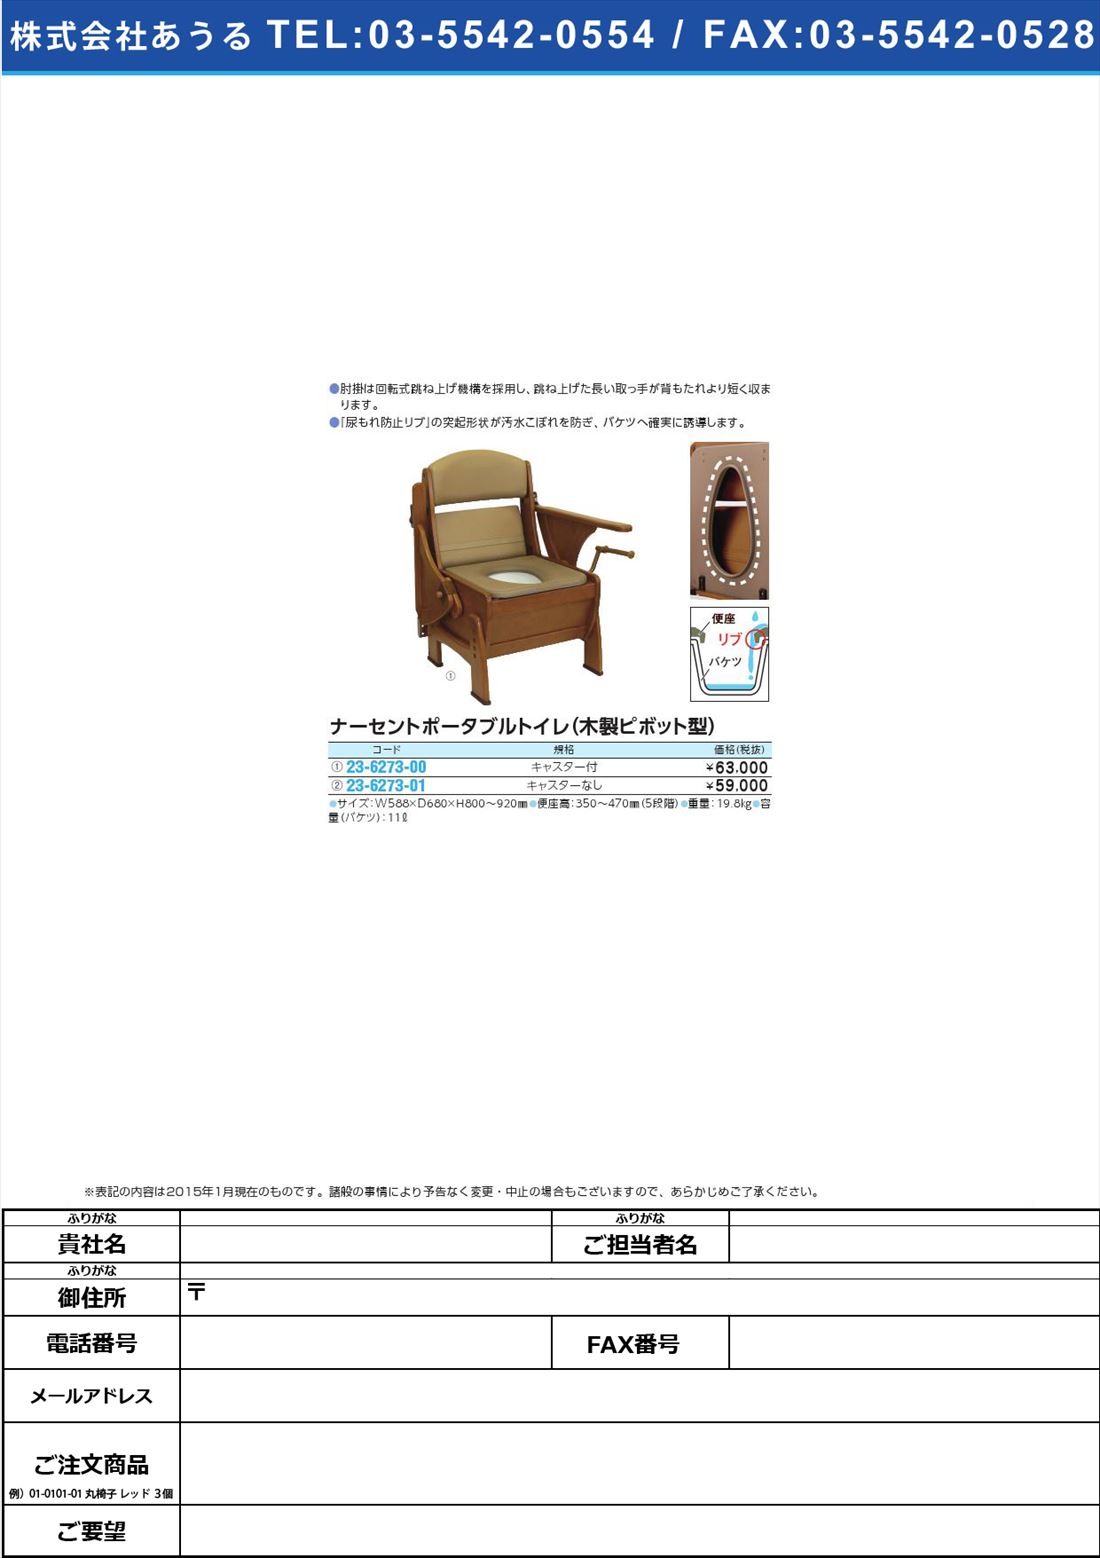 ナーセントトイレ・木製ピボット型 ﾅｰｾﾝﾄﾄｲﾚﾓｸｾｲﾋﾟﾎﾞｯﾄ(23-6273-01)ｷｬｽﾀｰﾅｼ【1台単位】